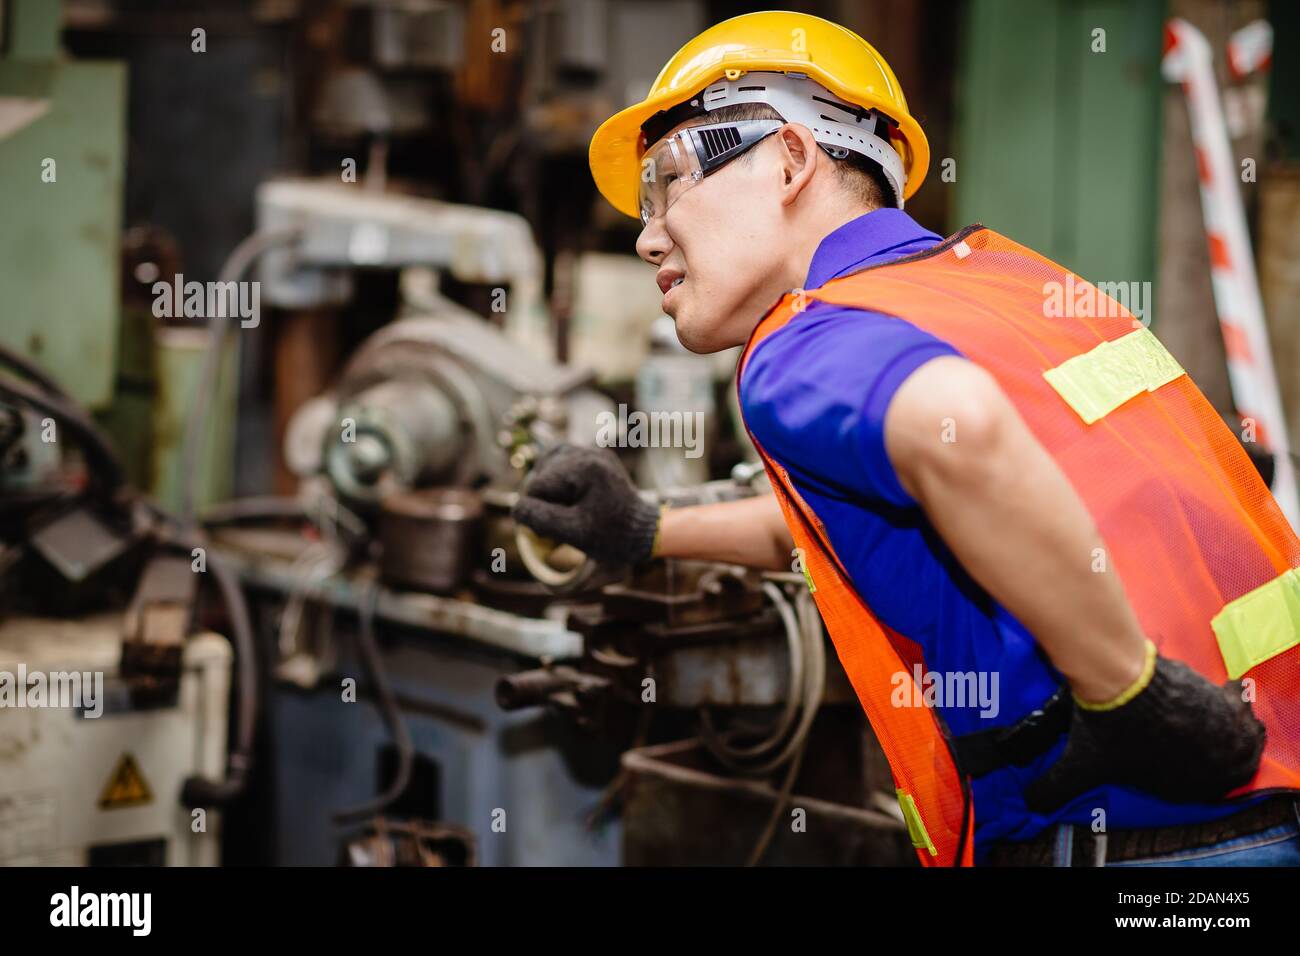 Les travailleurs asiatiques travaillant dur dans les usines industrielles souffrent de douleurs au dos de la taille lorsqu'ils travaillent sur des machines. Banque D'Images